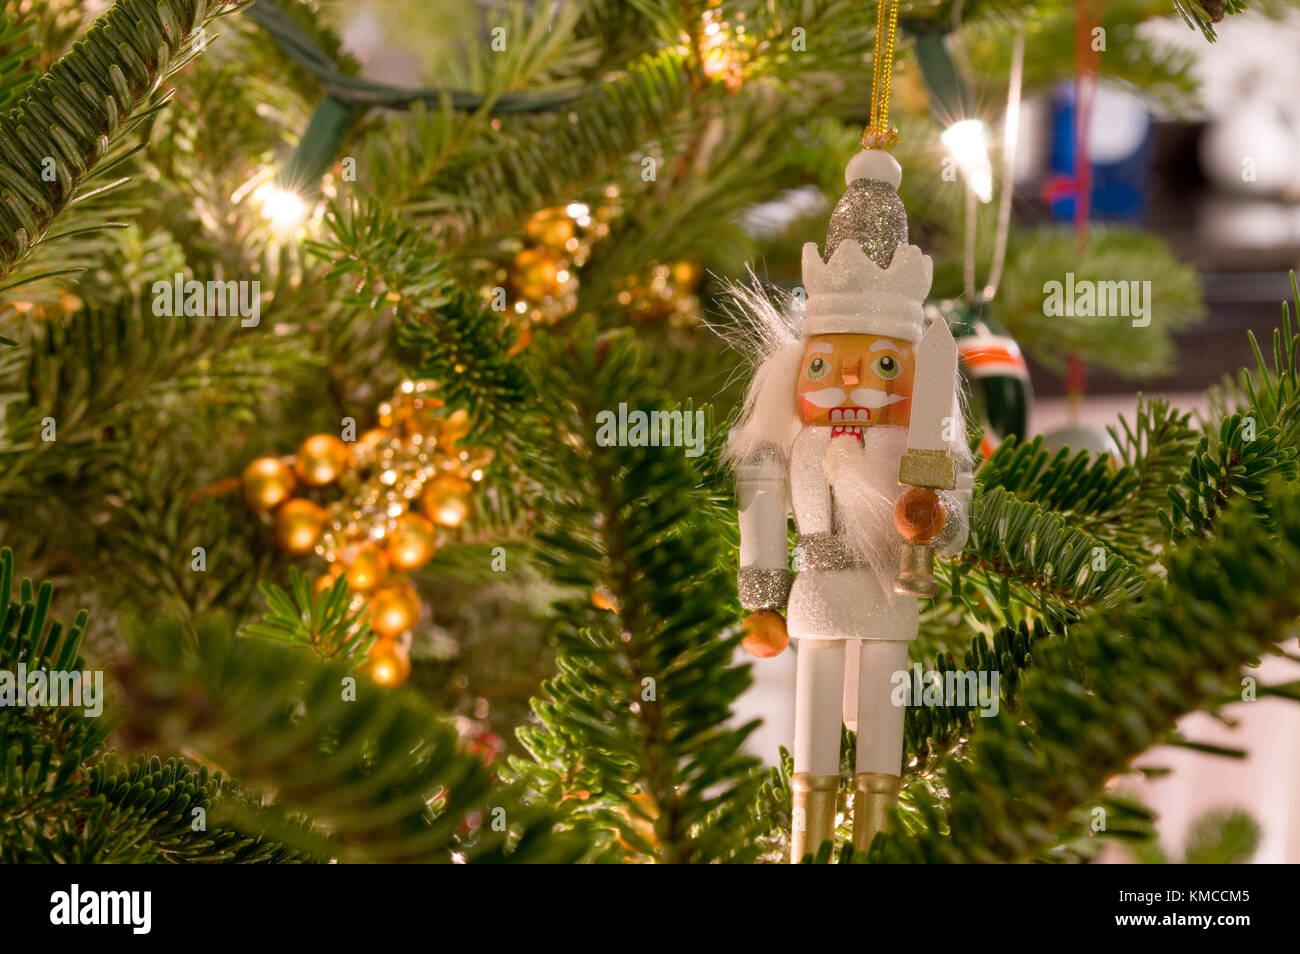 Ornement Casse-noisette niché dans l'arbre de Noël Banque D'Images